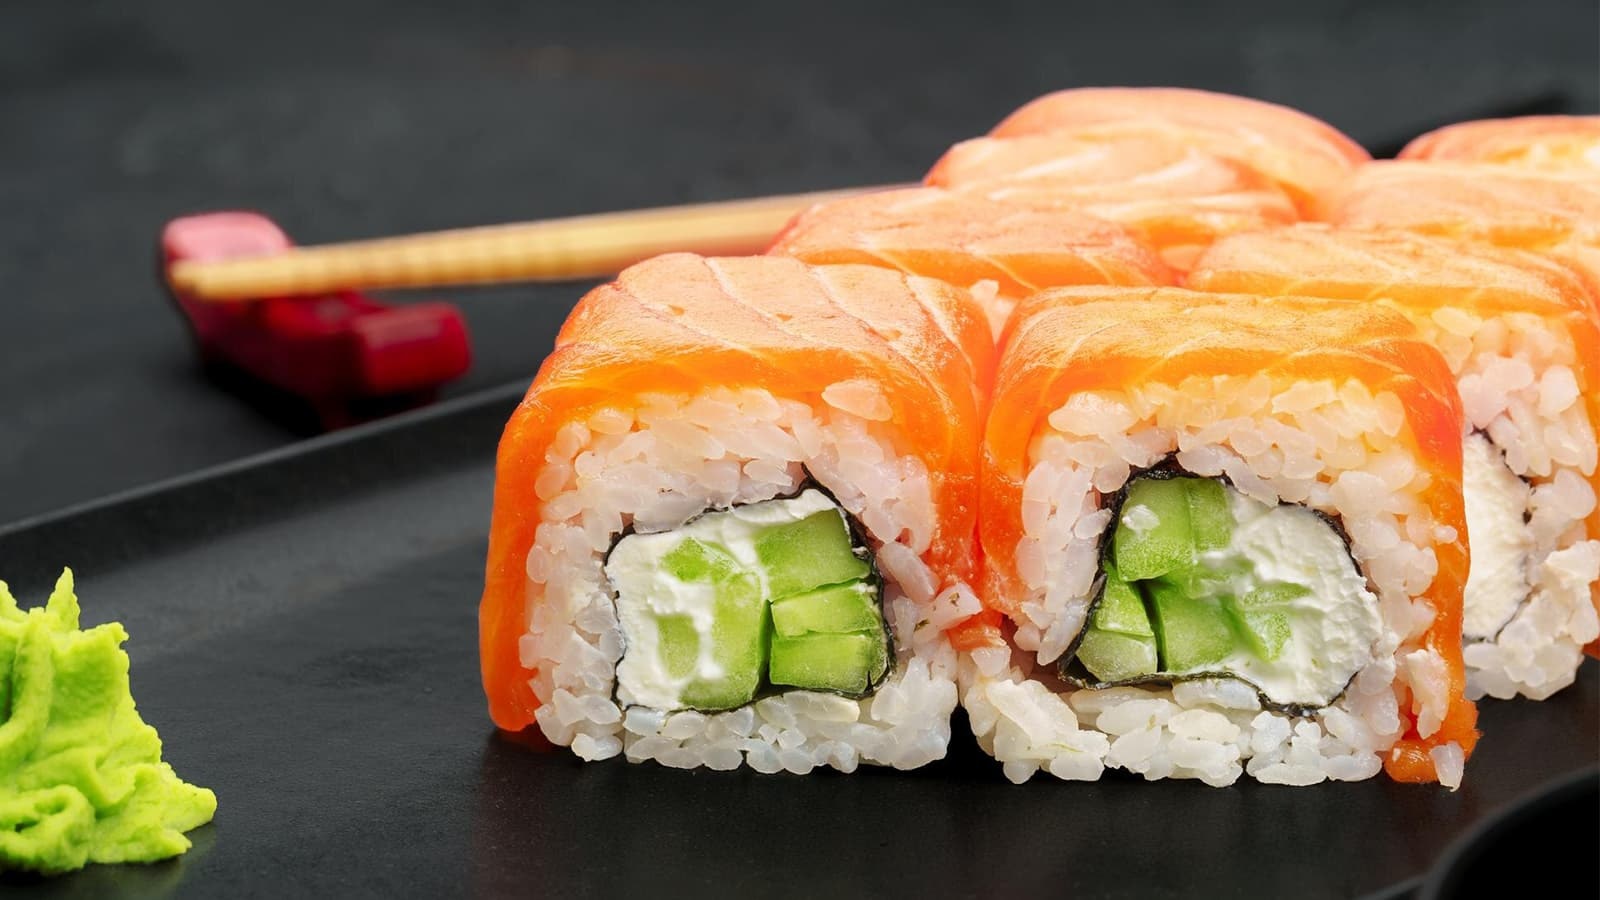 Wie gesund ist Sushi wirklich? Bild von Sushi neben einem kleinen Haufen Wasabi.